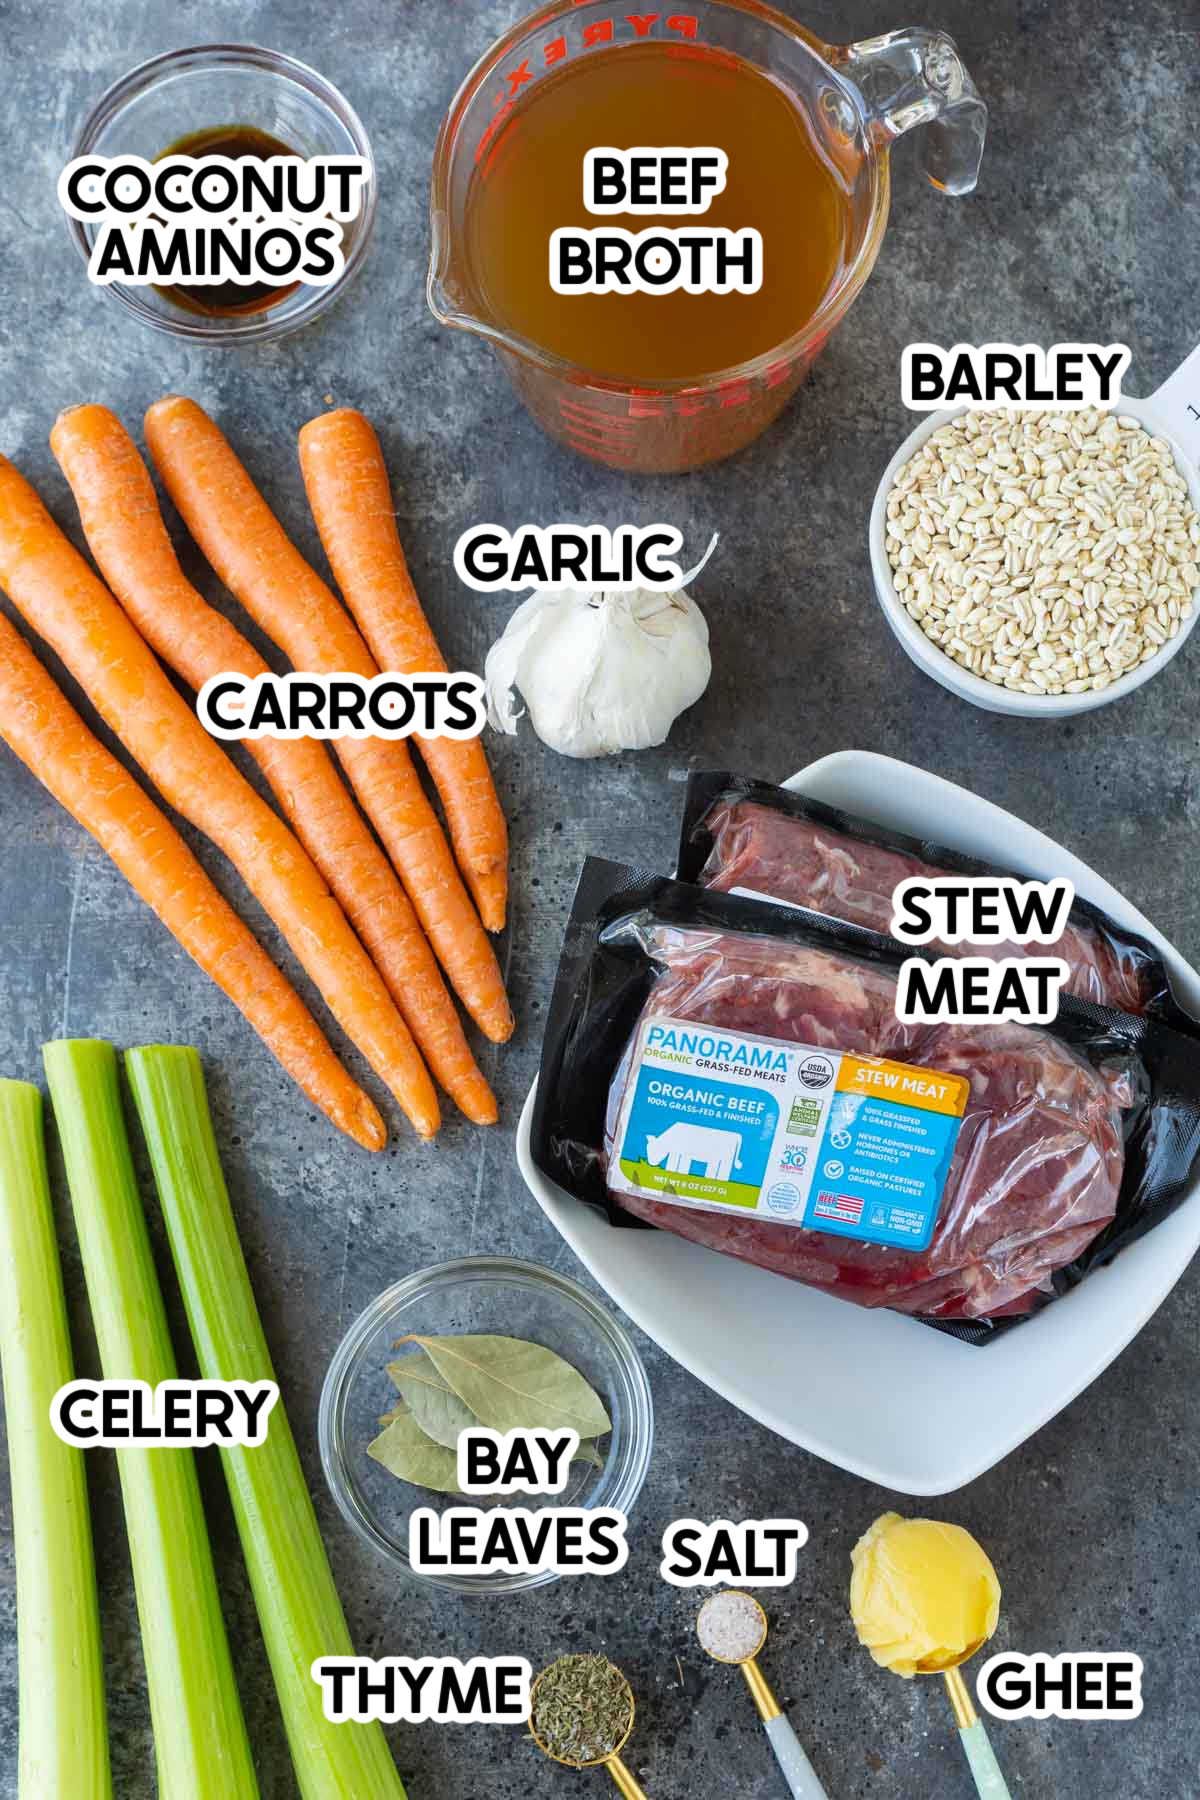 Korenje, zelenjava in druge sestavine, potrebne za pripravo juhe iz govejega ječmena